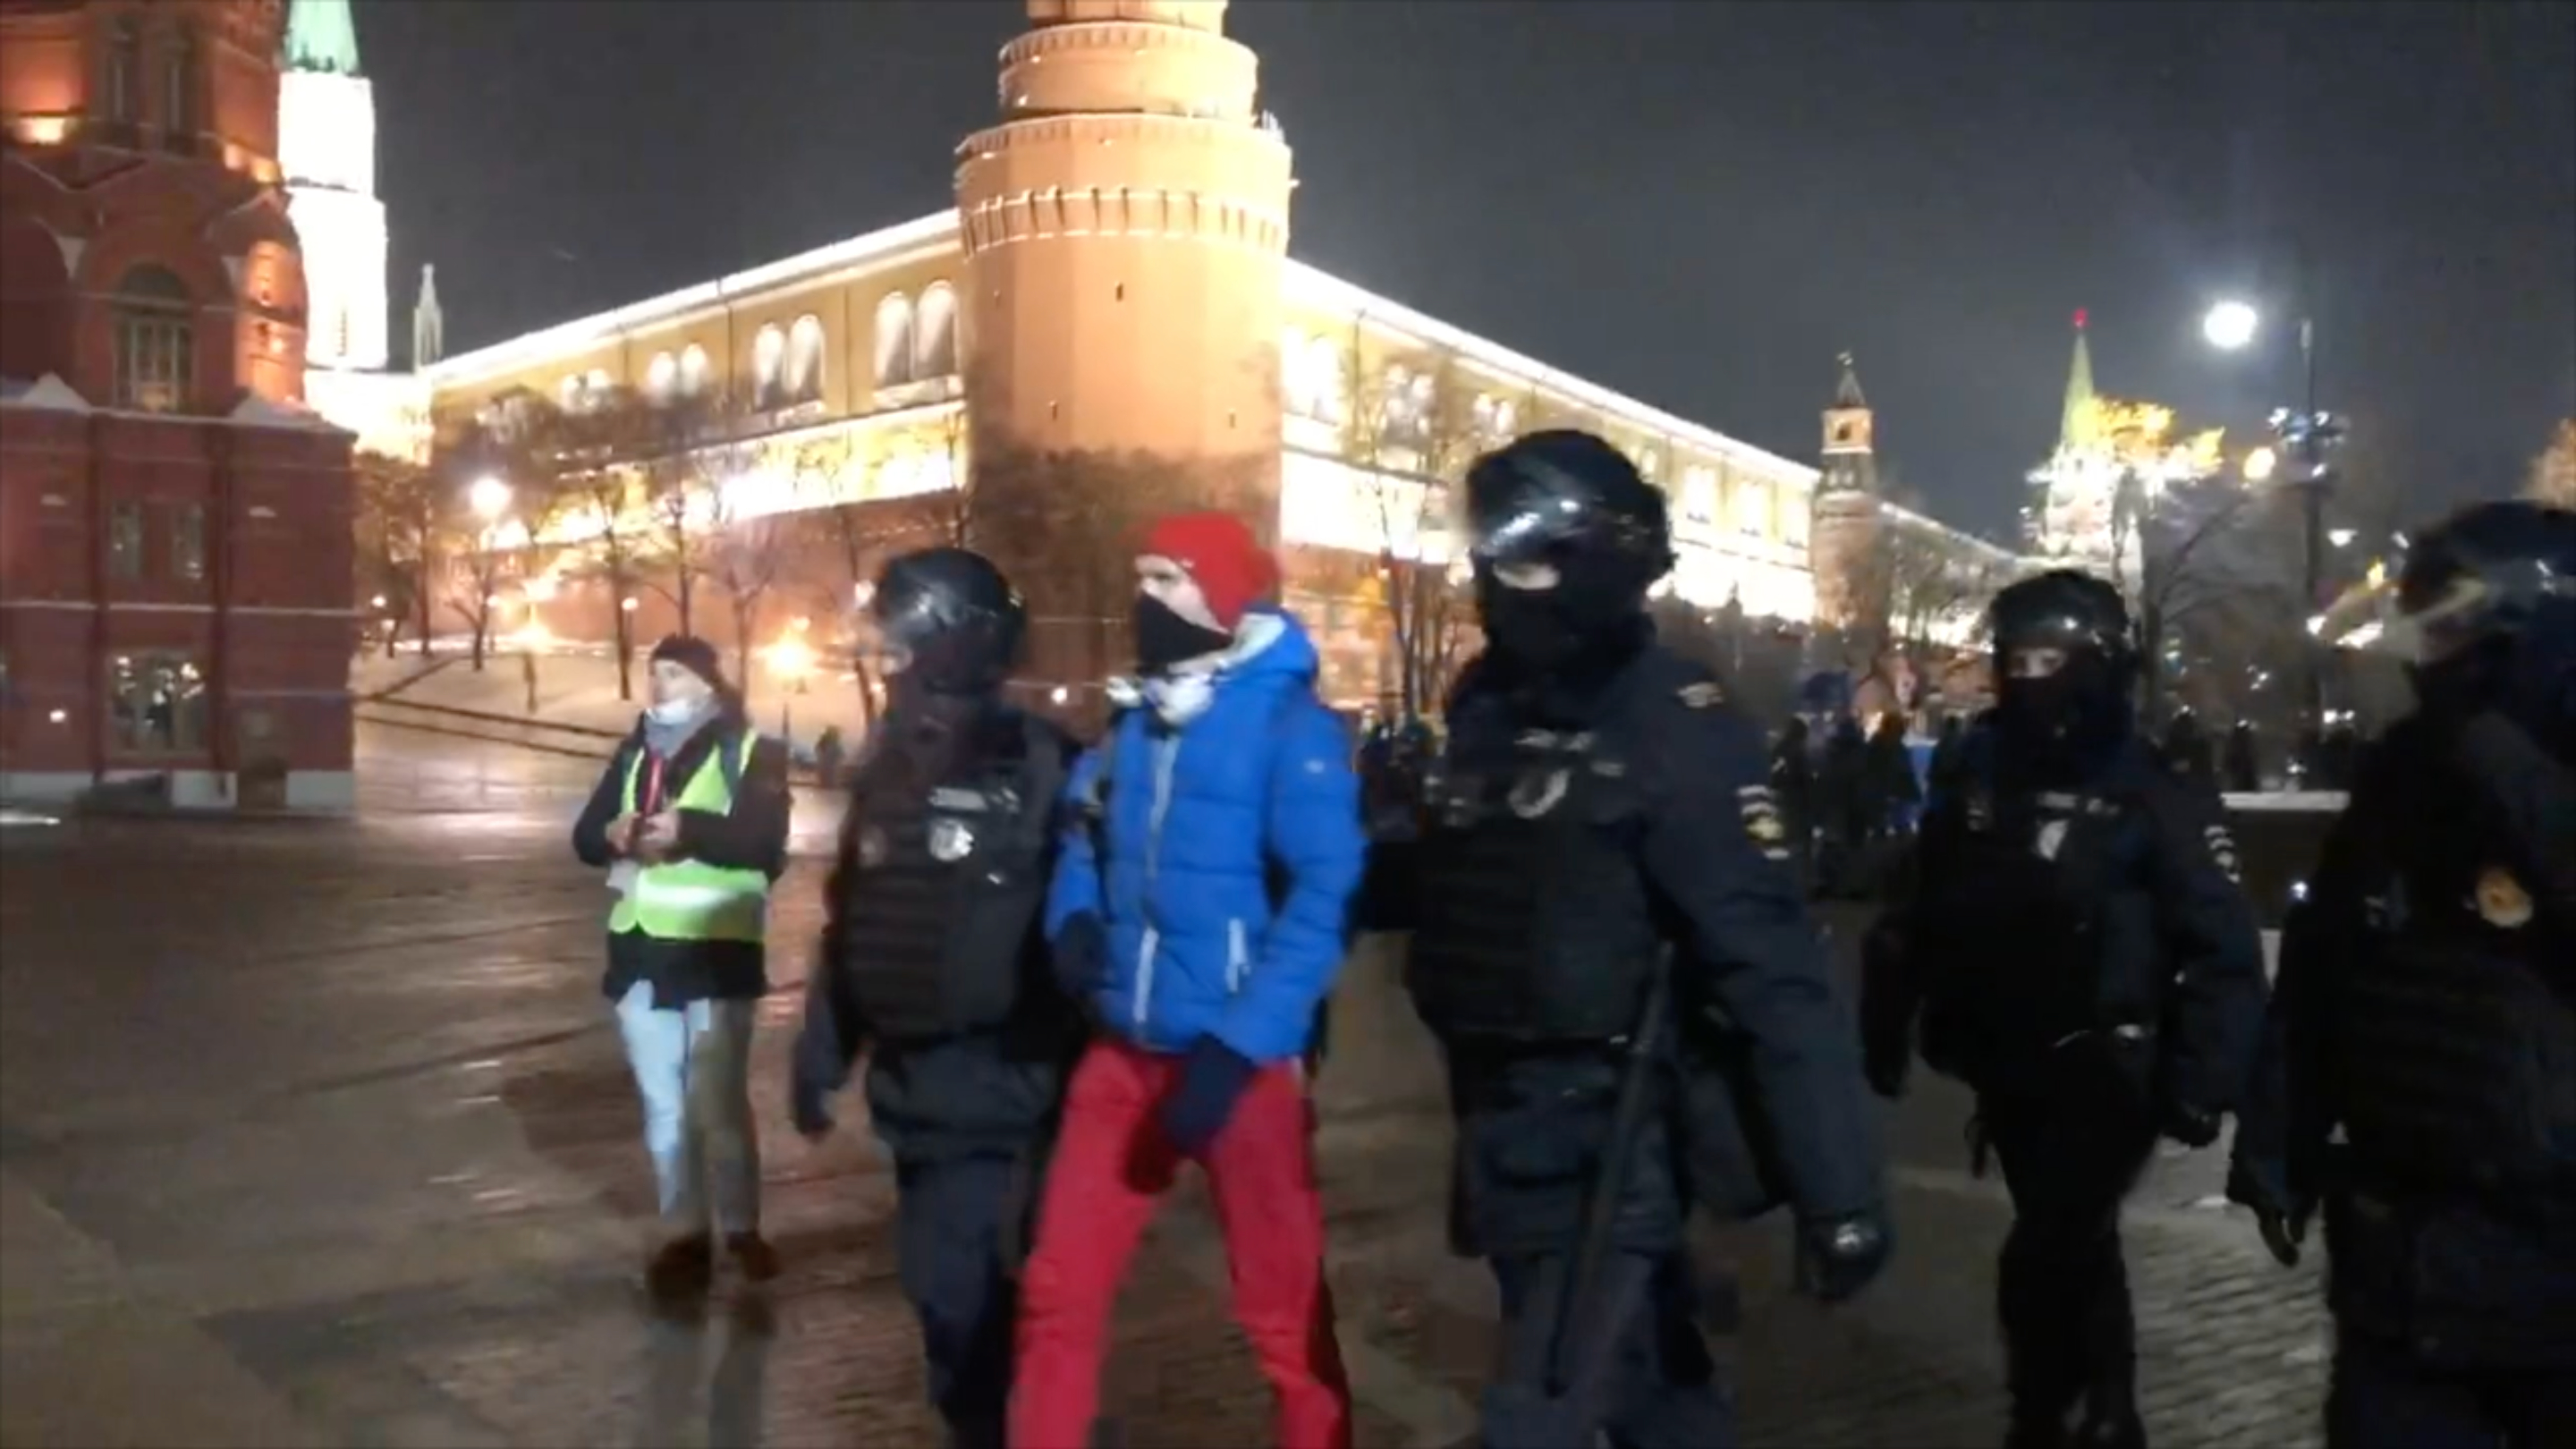 Обстановка в Москве после решения суда по делу Навального. Видео